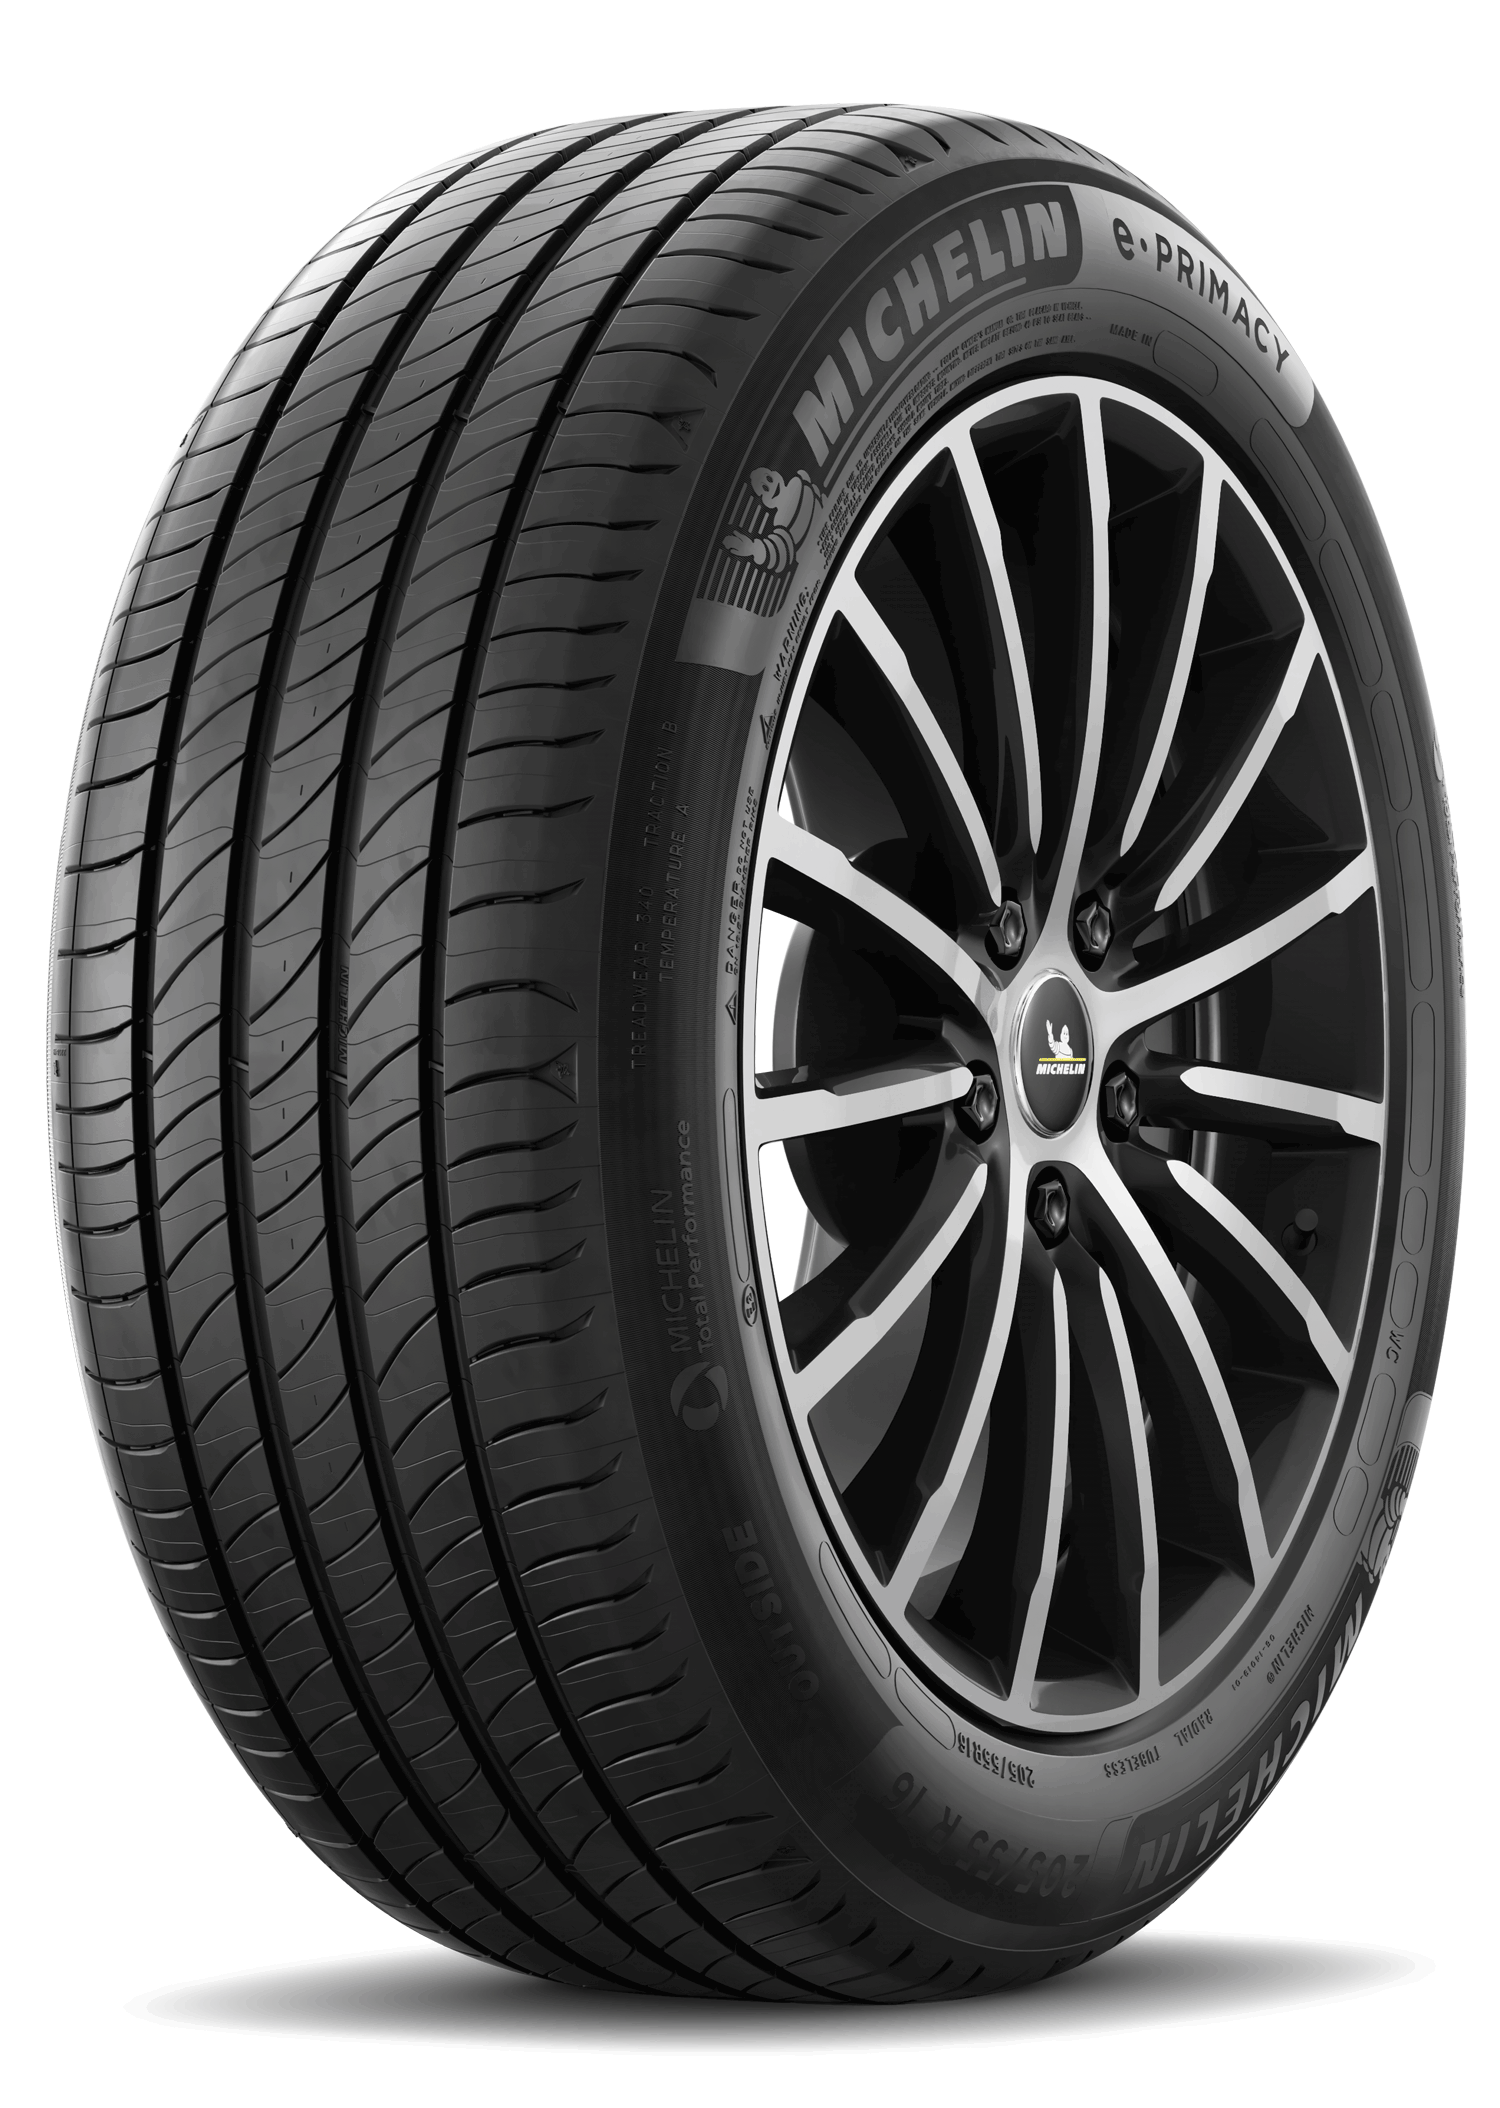 Michelin Michelin 195/55 R16 91V E PRIMACY XL pneumatici nuovi Estivo 1